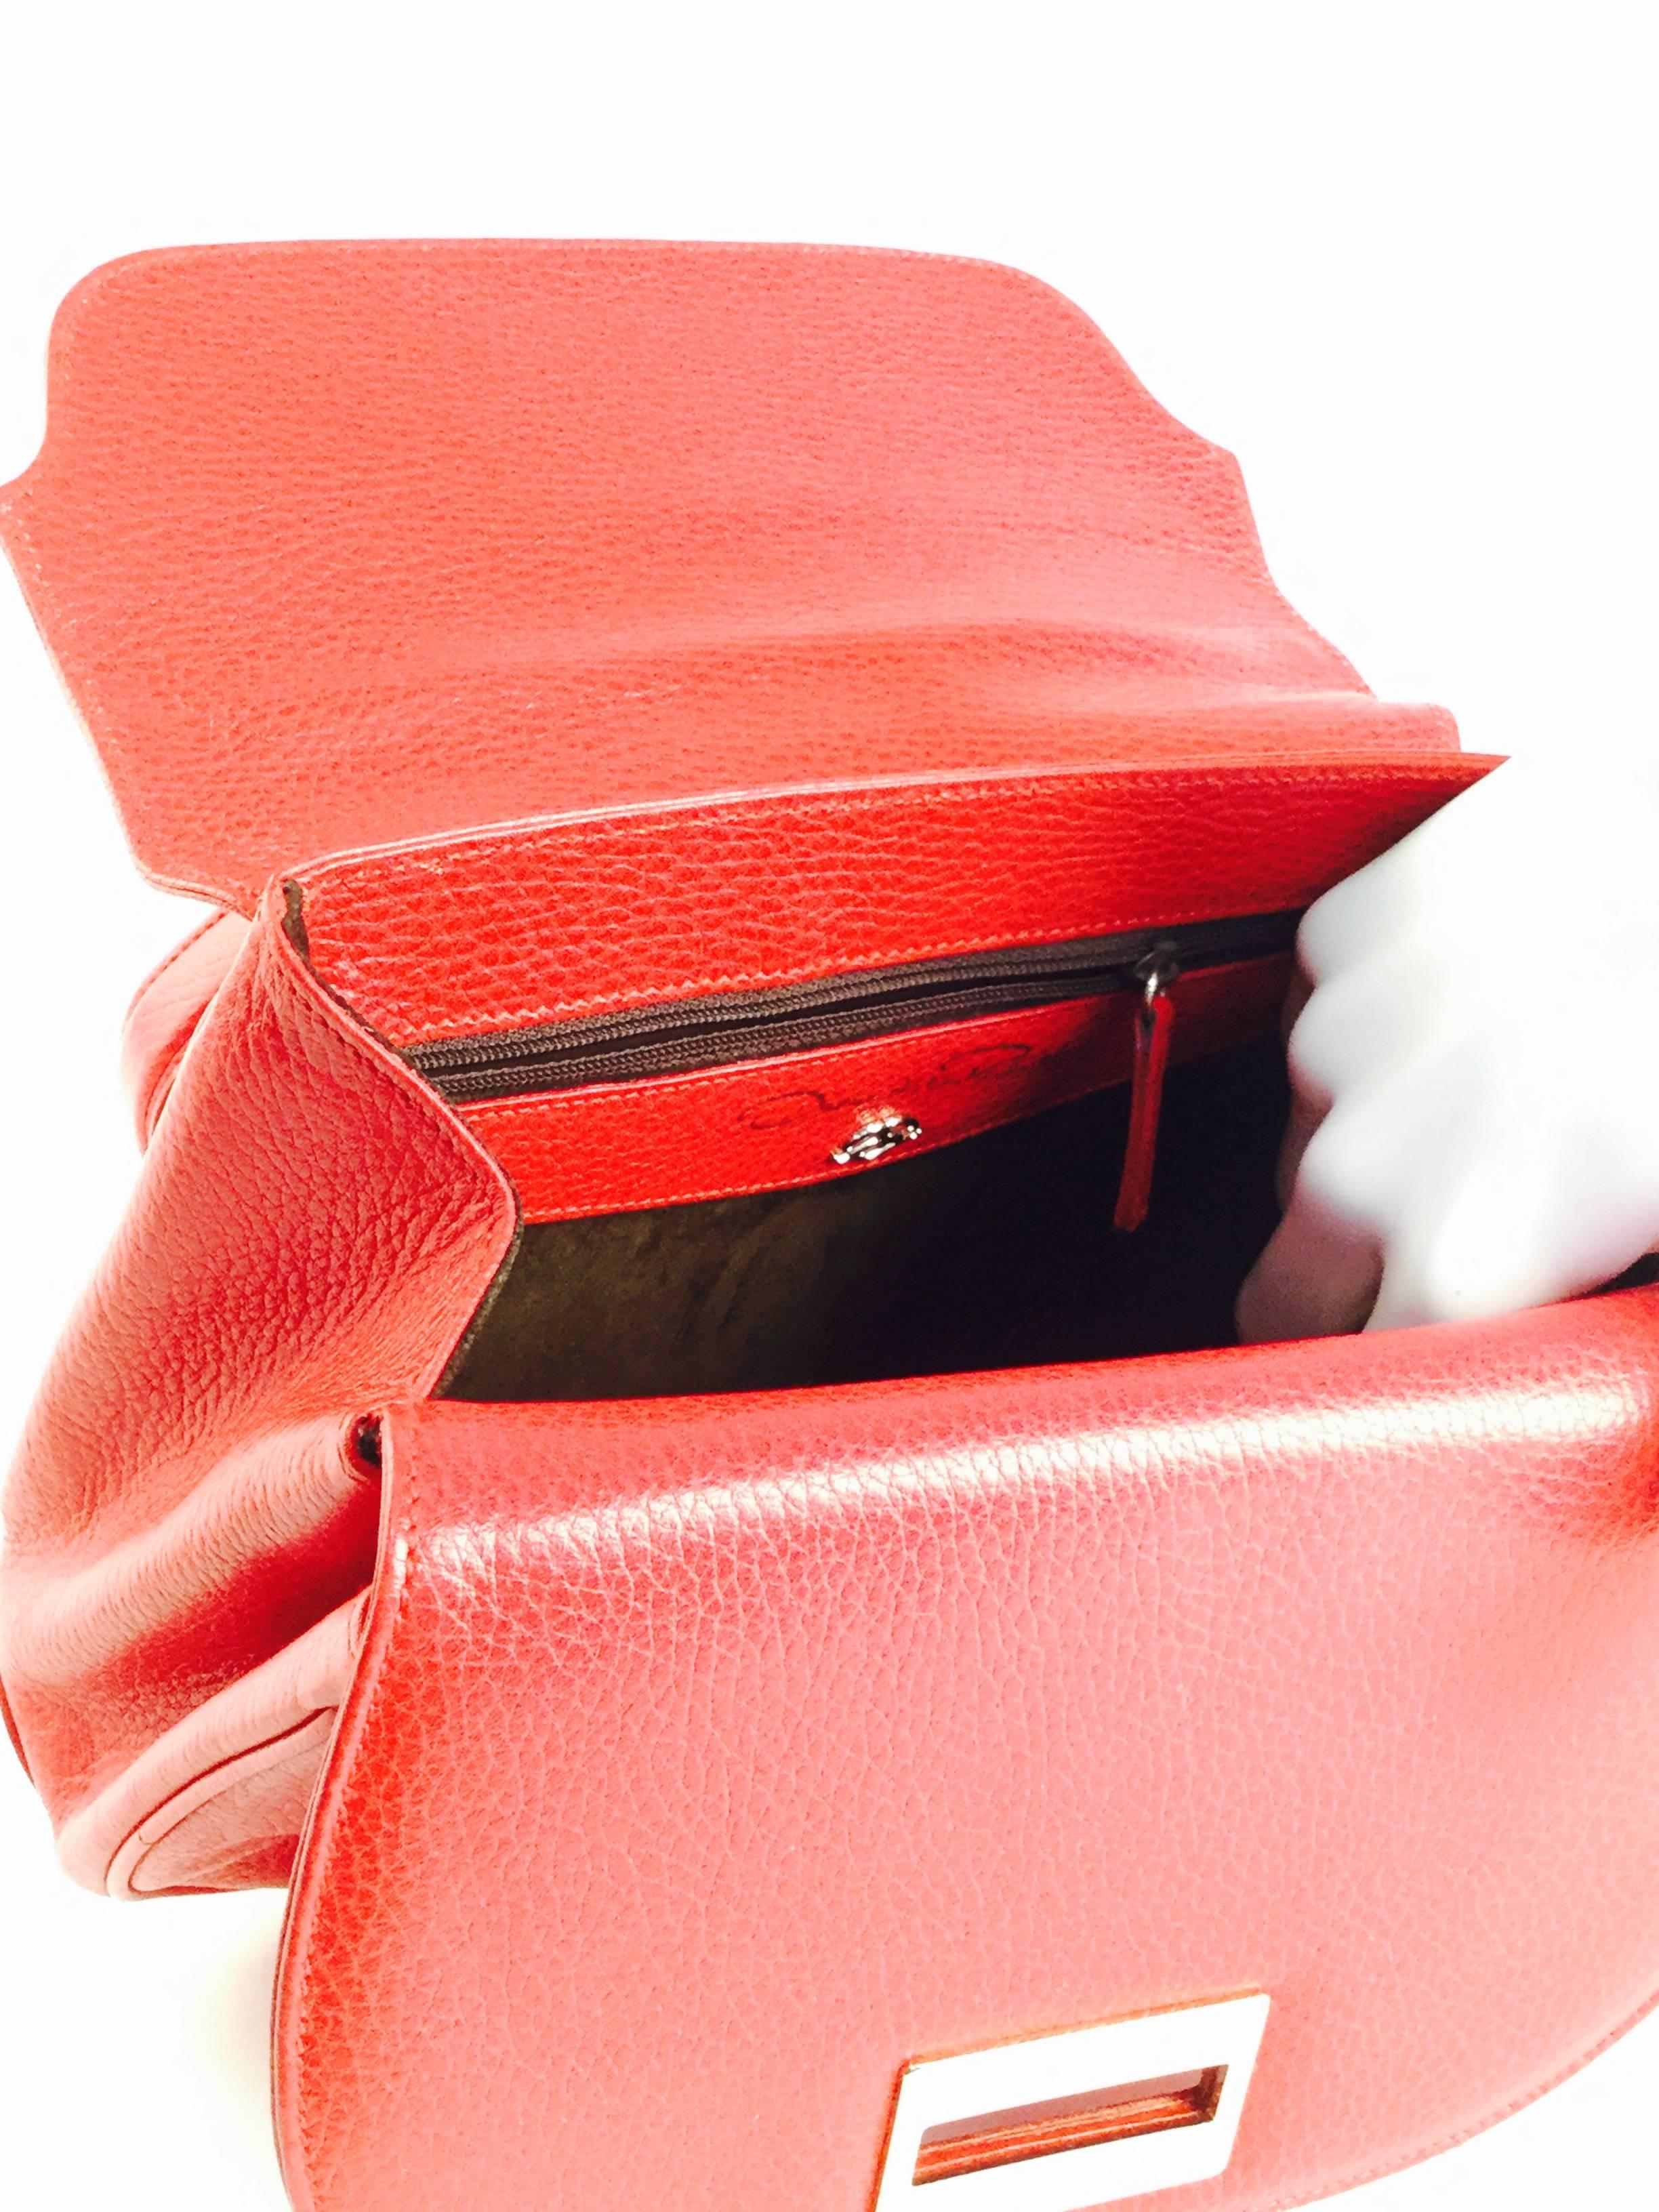  Vintage Oscar de la Renta Red Leather Top Handle Double Flap Saddle Bag For Sale 1